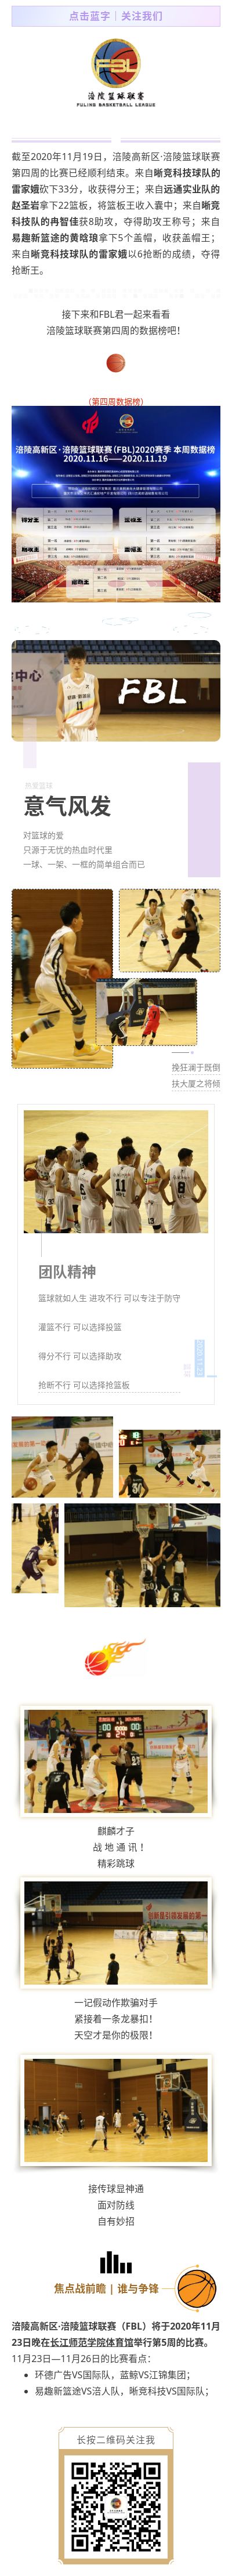 涪陵高新区·涪陵篮球联赛（FBL）2020赛季周报（11.16-19）